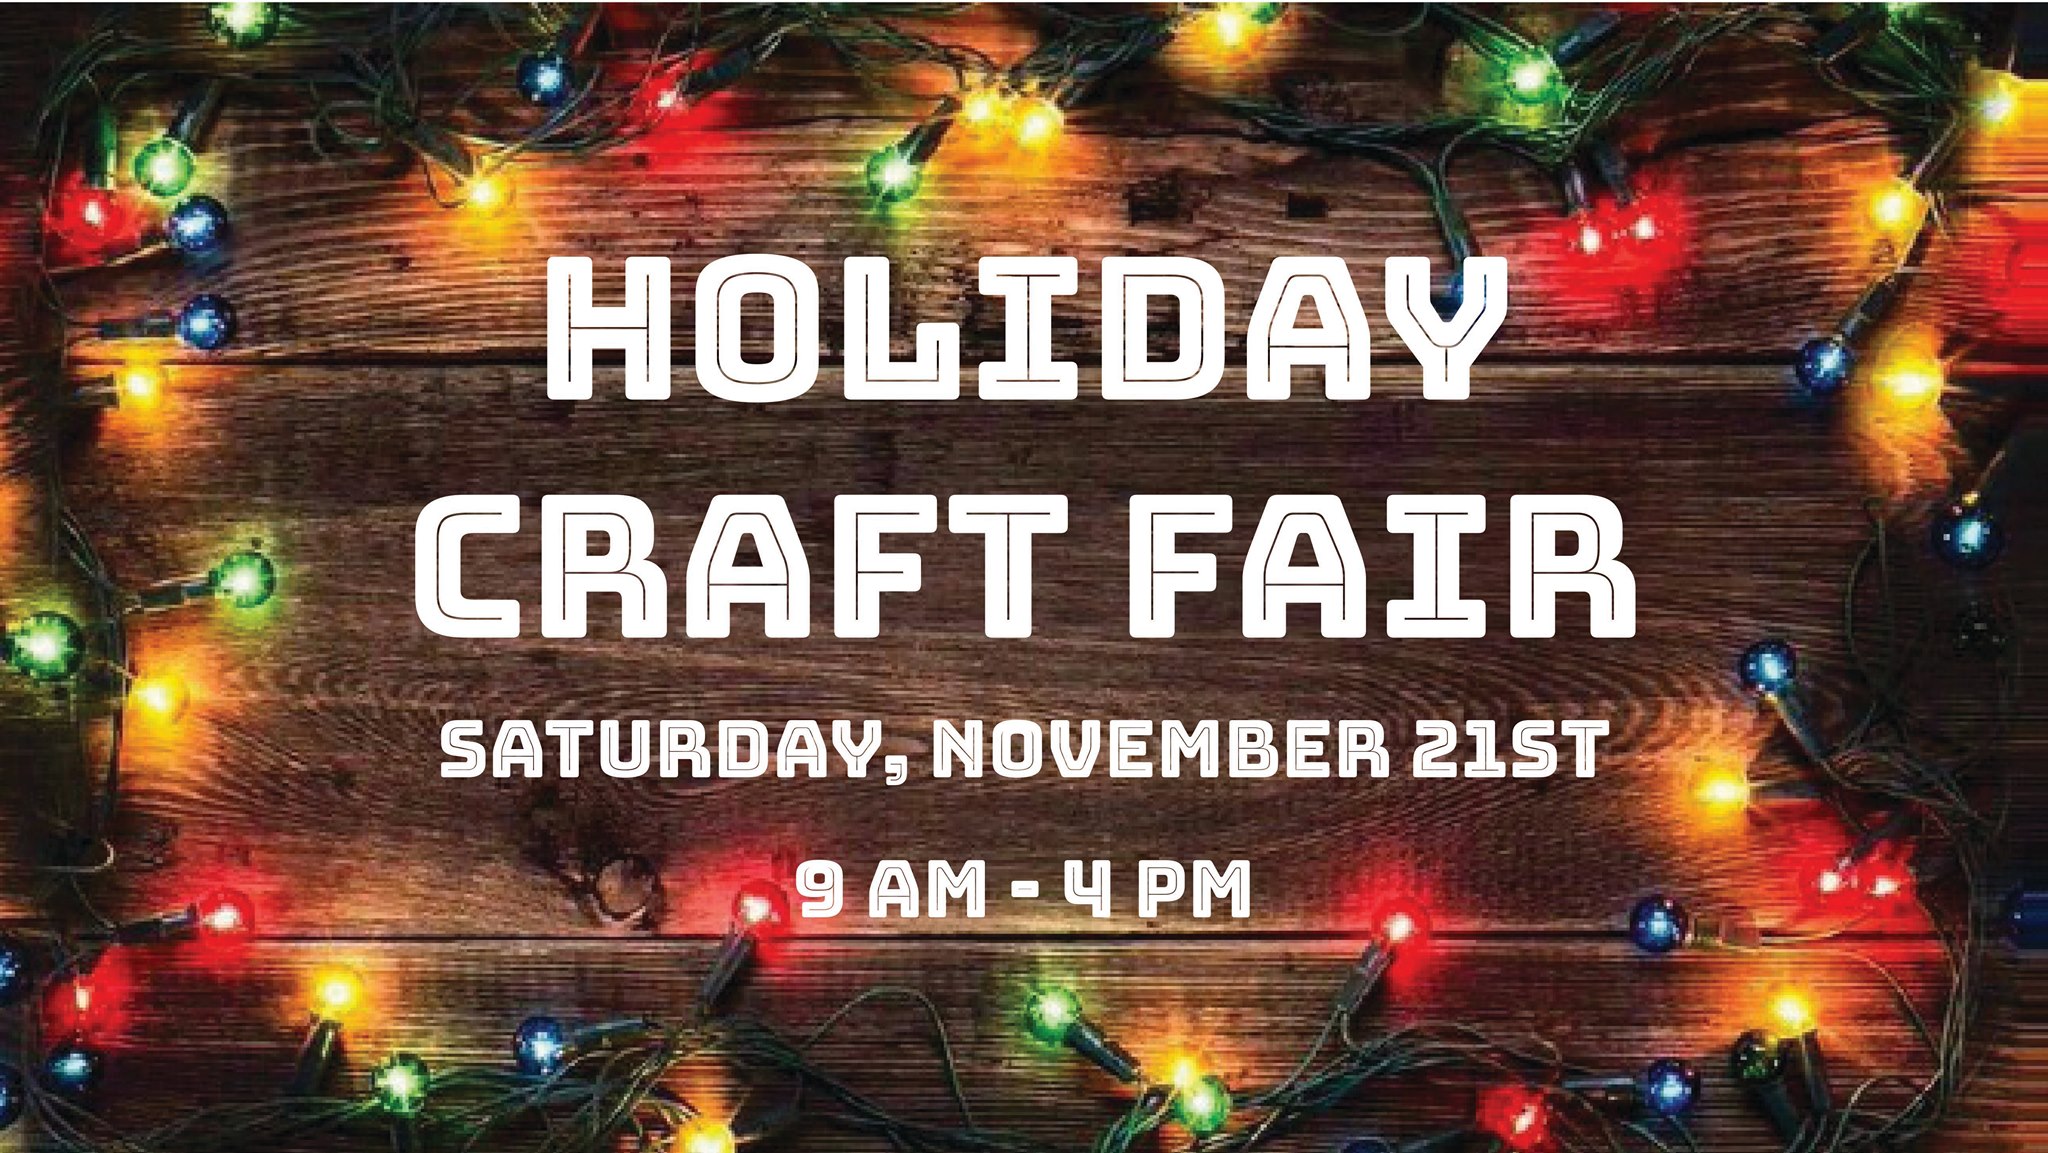 Washington County Holiday Craft Fair is Saturday, November 21, 2020